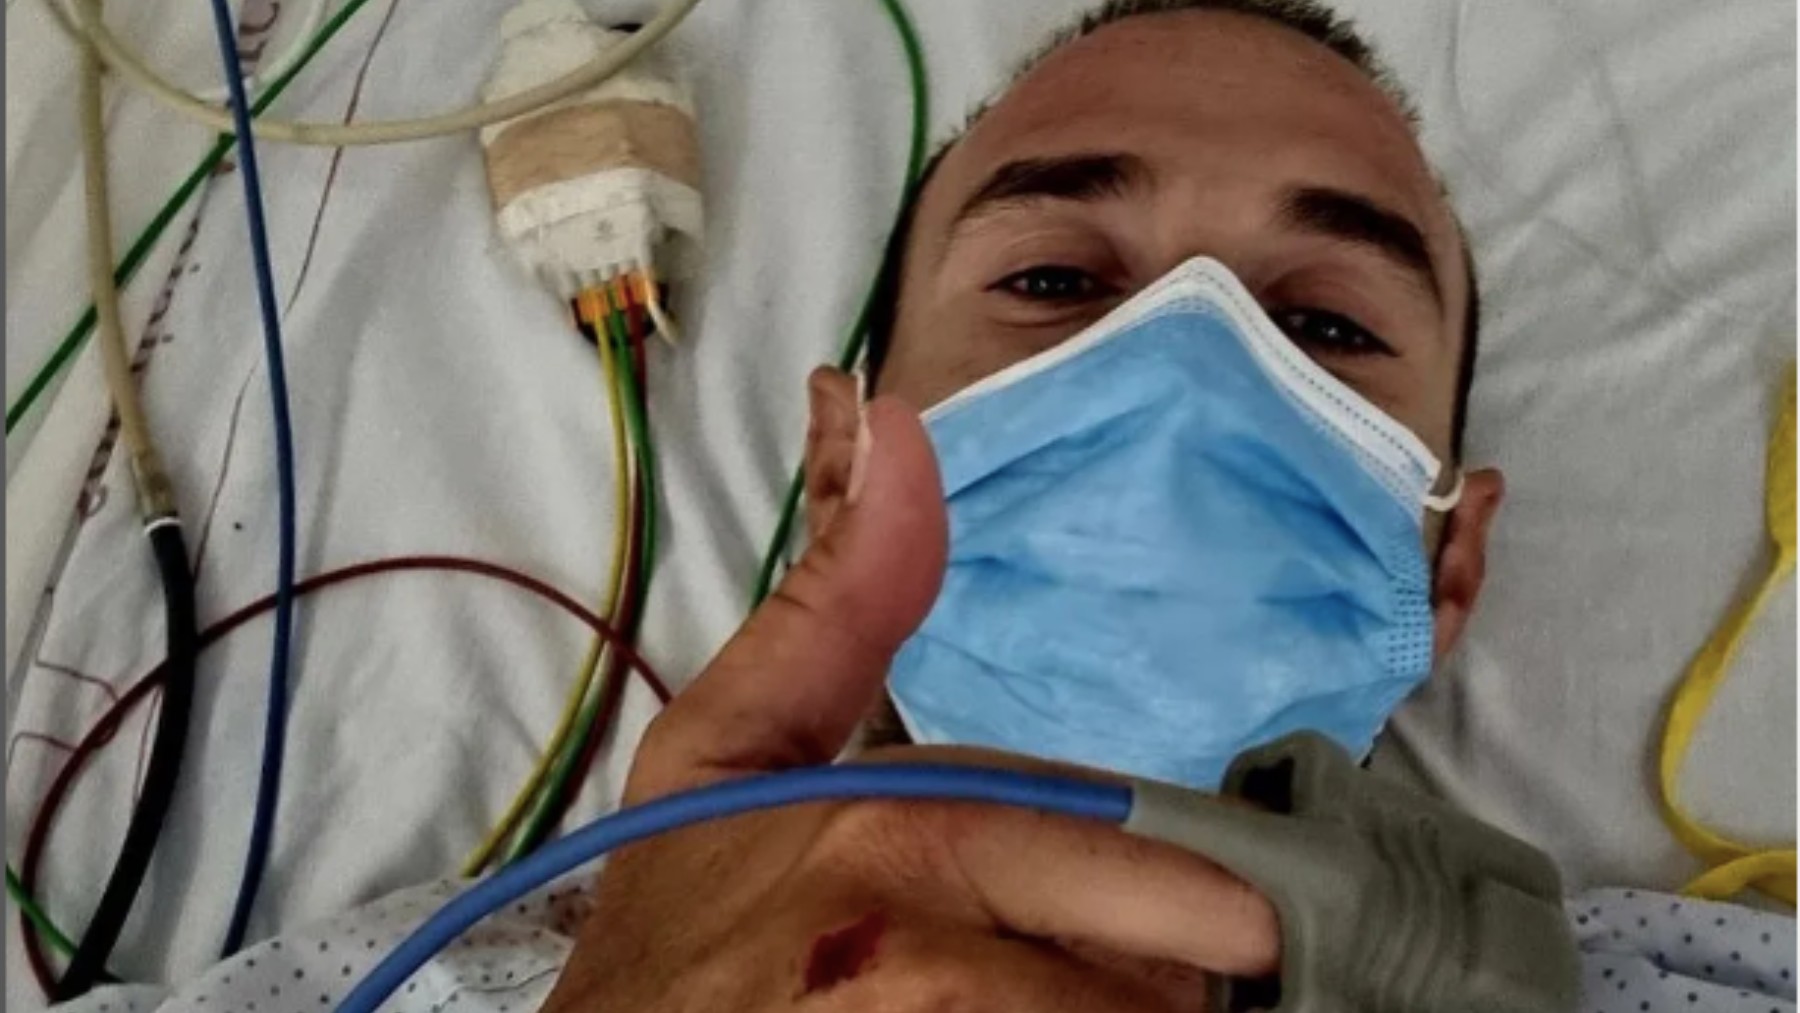 Alejandro Valverde, en el hospital tras ser atropellado. (Foto: Alejandro Valverde)